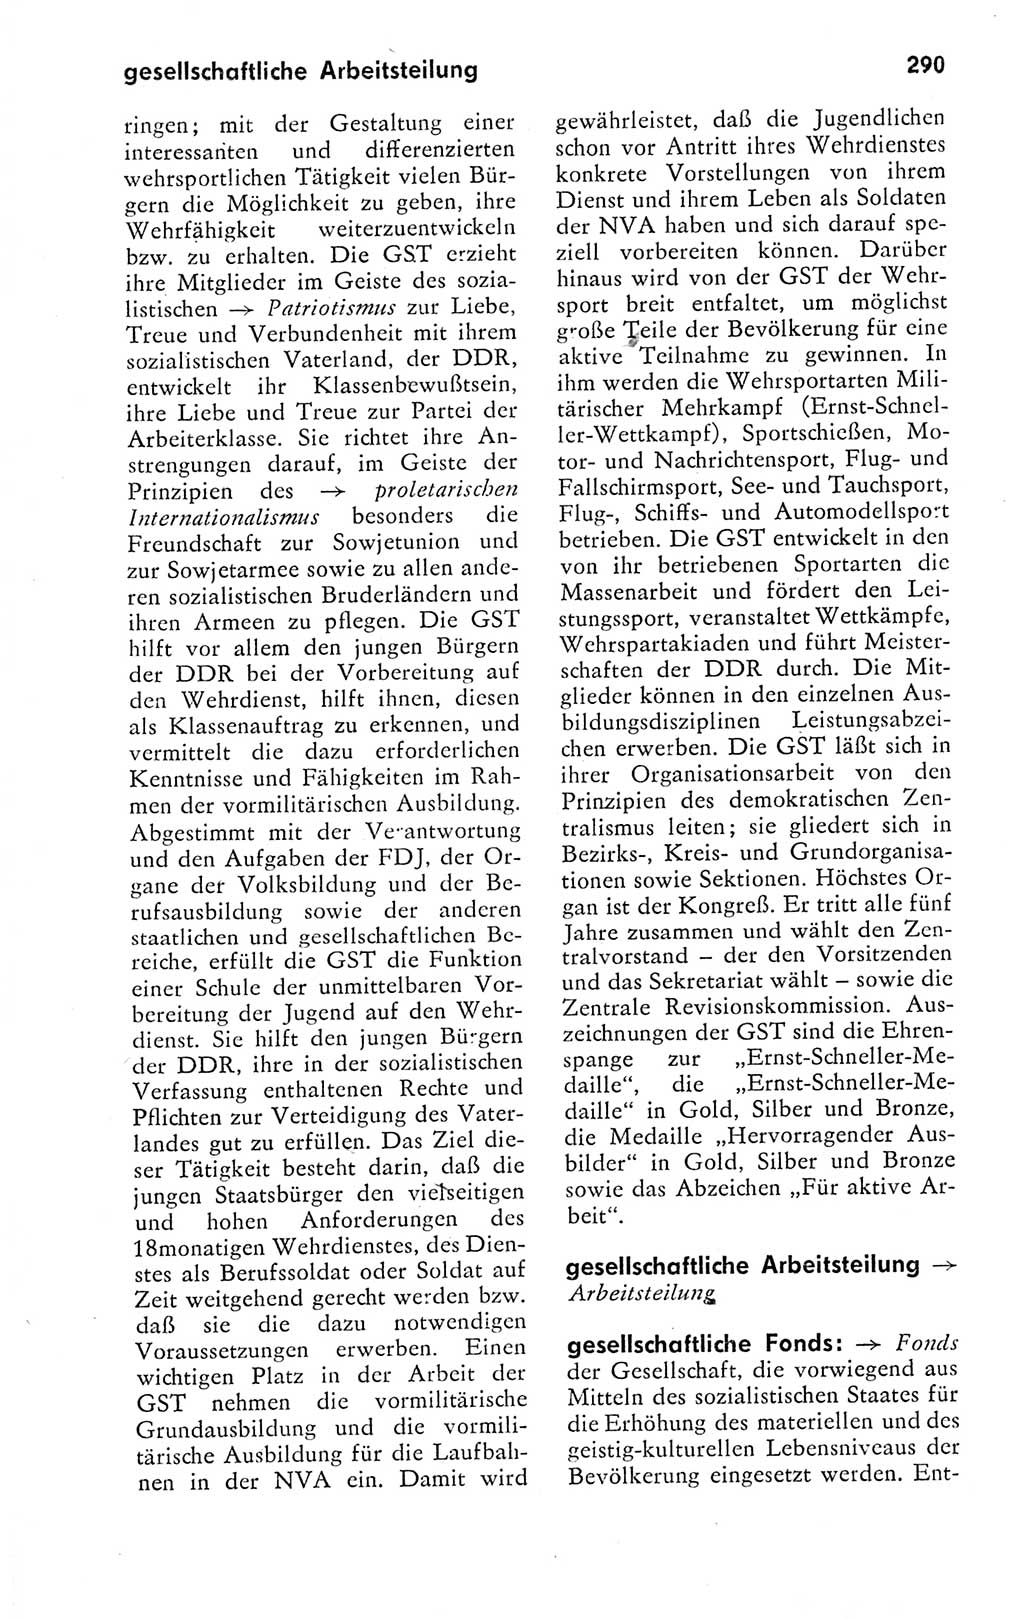 Kleines politisches Wörterbuch [Deutsche Demokratische Republik (DDR)] 1978, Seite 290 (Kl. pol. Wb. DDR 1978, S. 290)